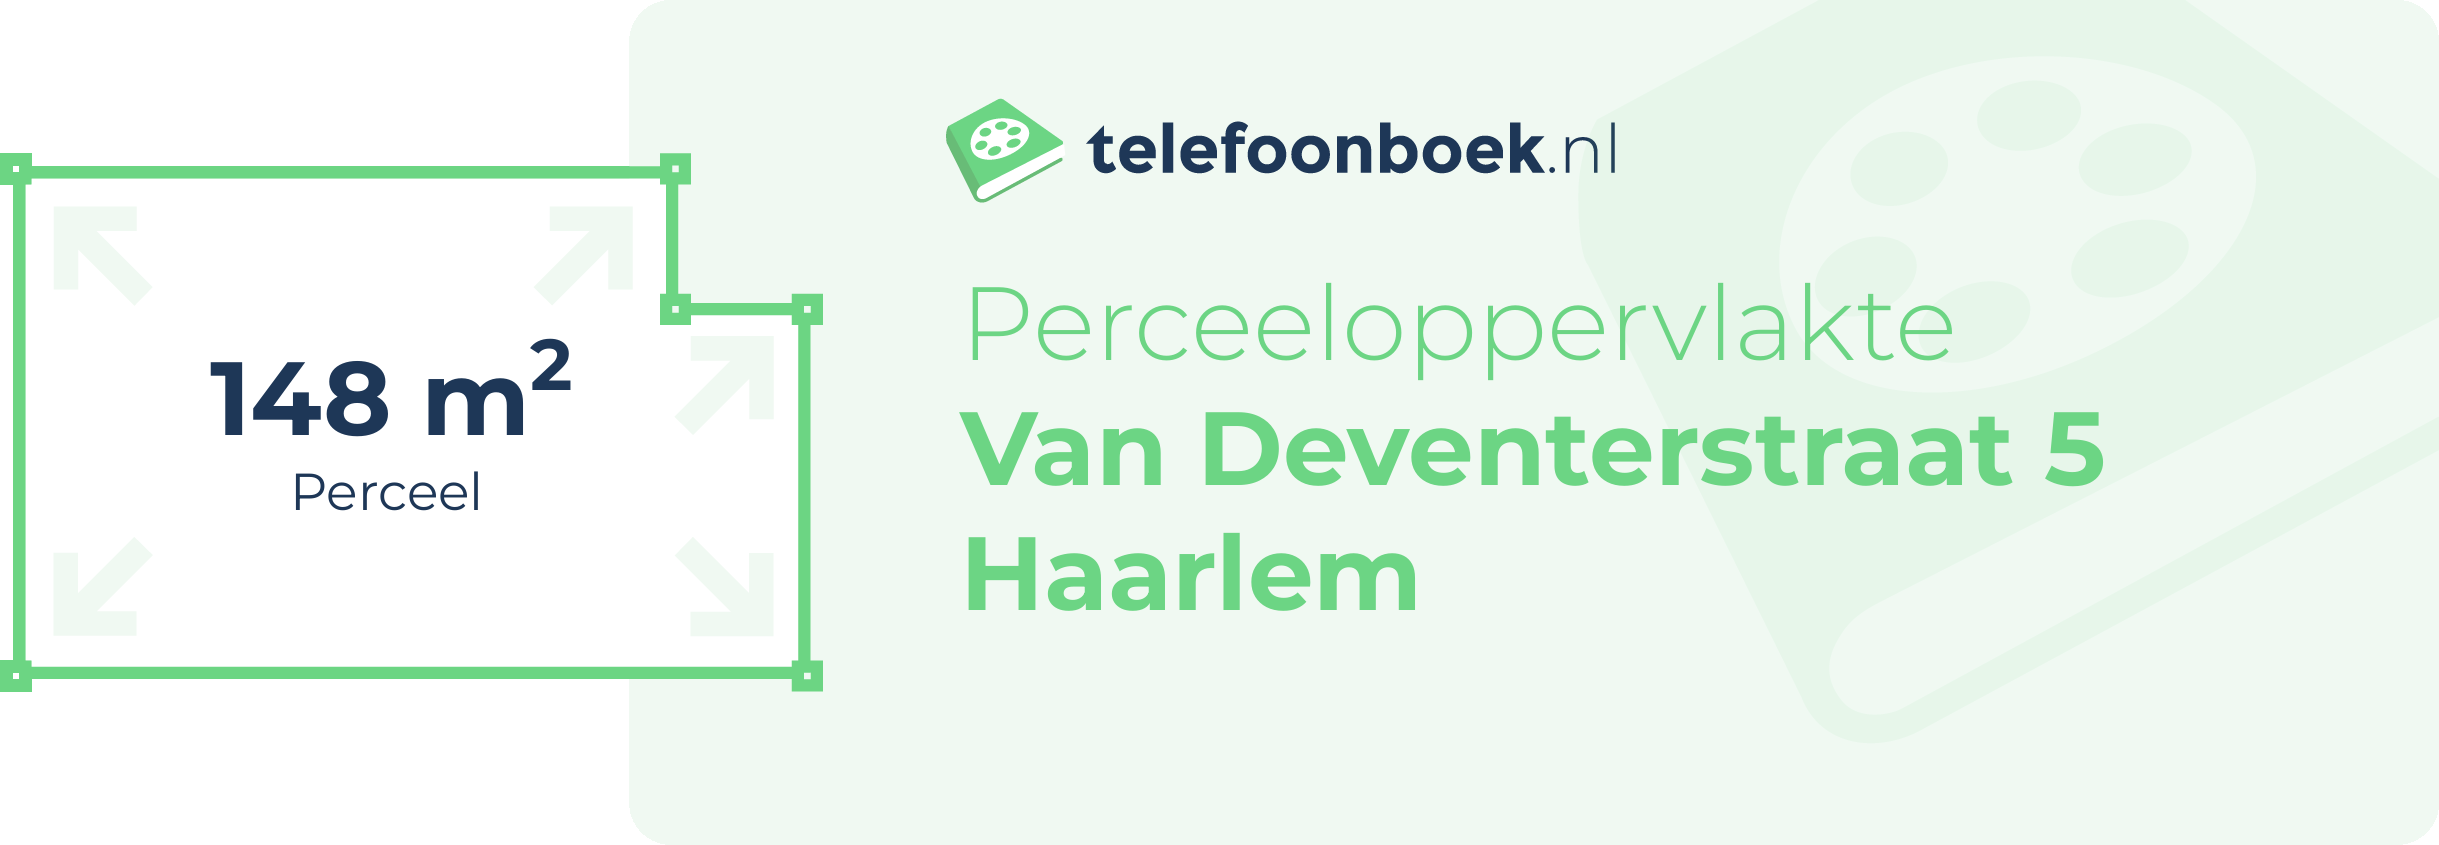 Perceeloppervlakte Van Deventerstraat 5 Haarlem